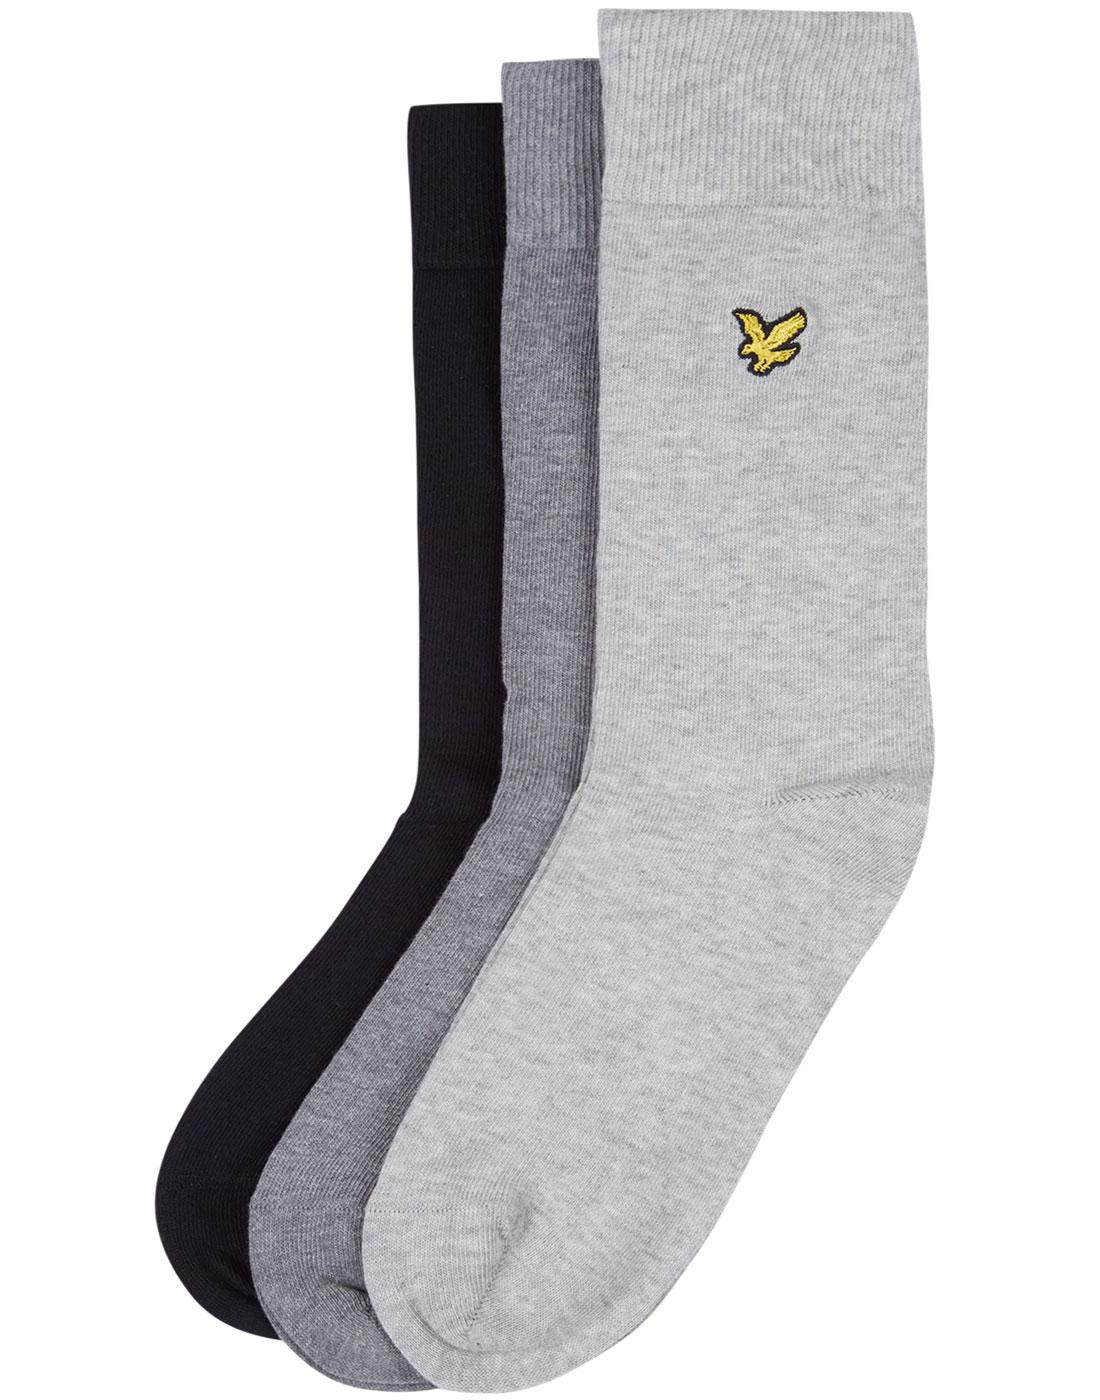 LYLE & SCOTT Men's Retro 3 Pack Socks (Black/Grey)